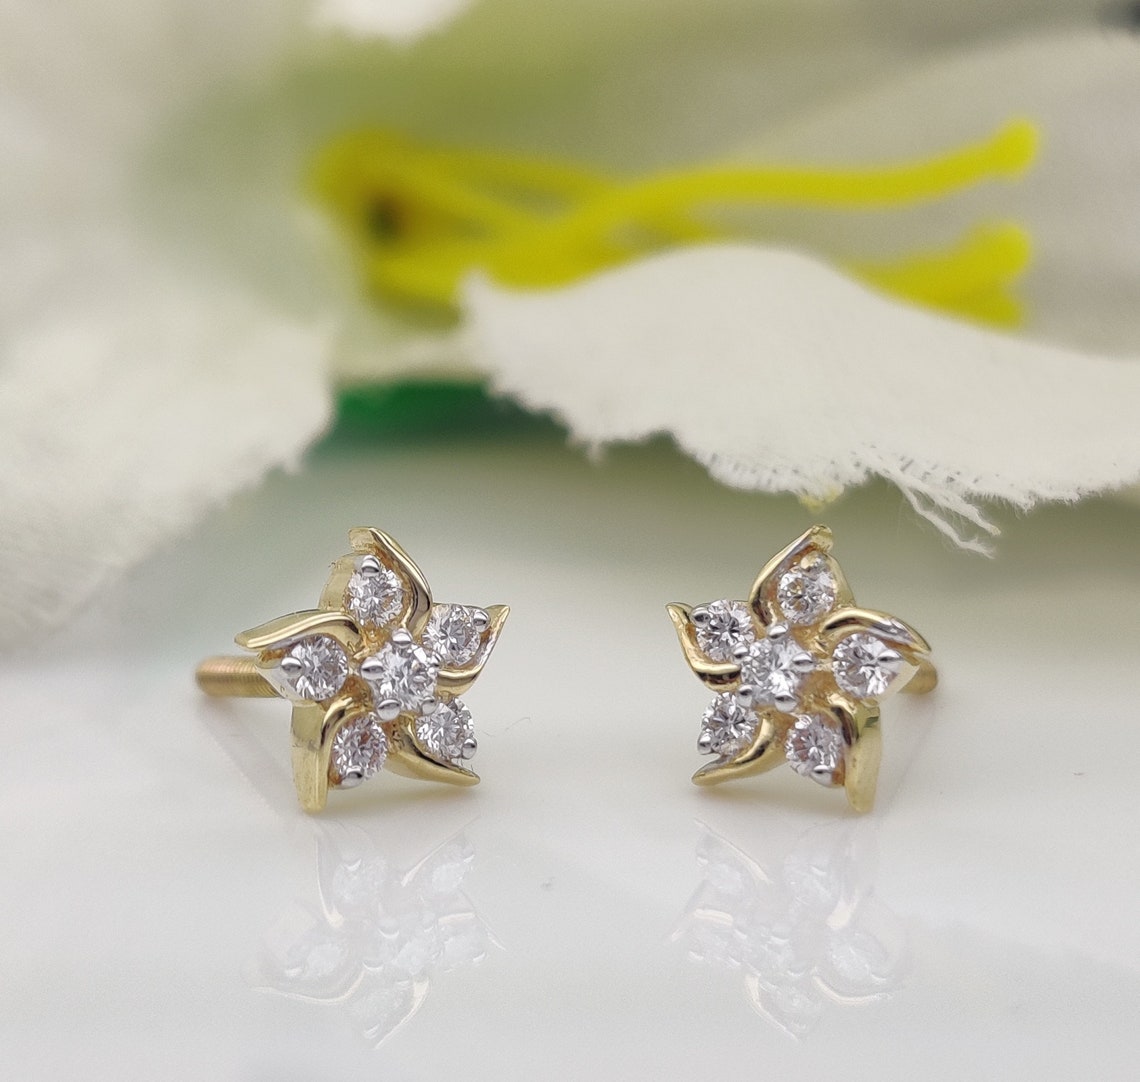 Star Earrings / Diamond Star Earrings in 14k Gold / Round Cut - Etsy